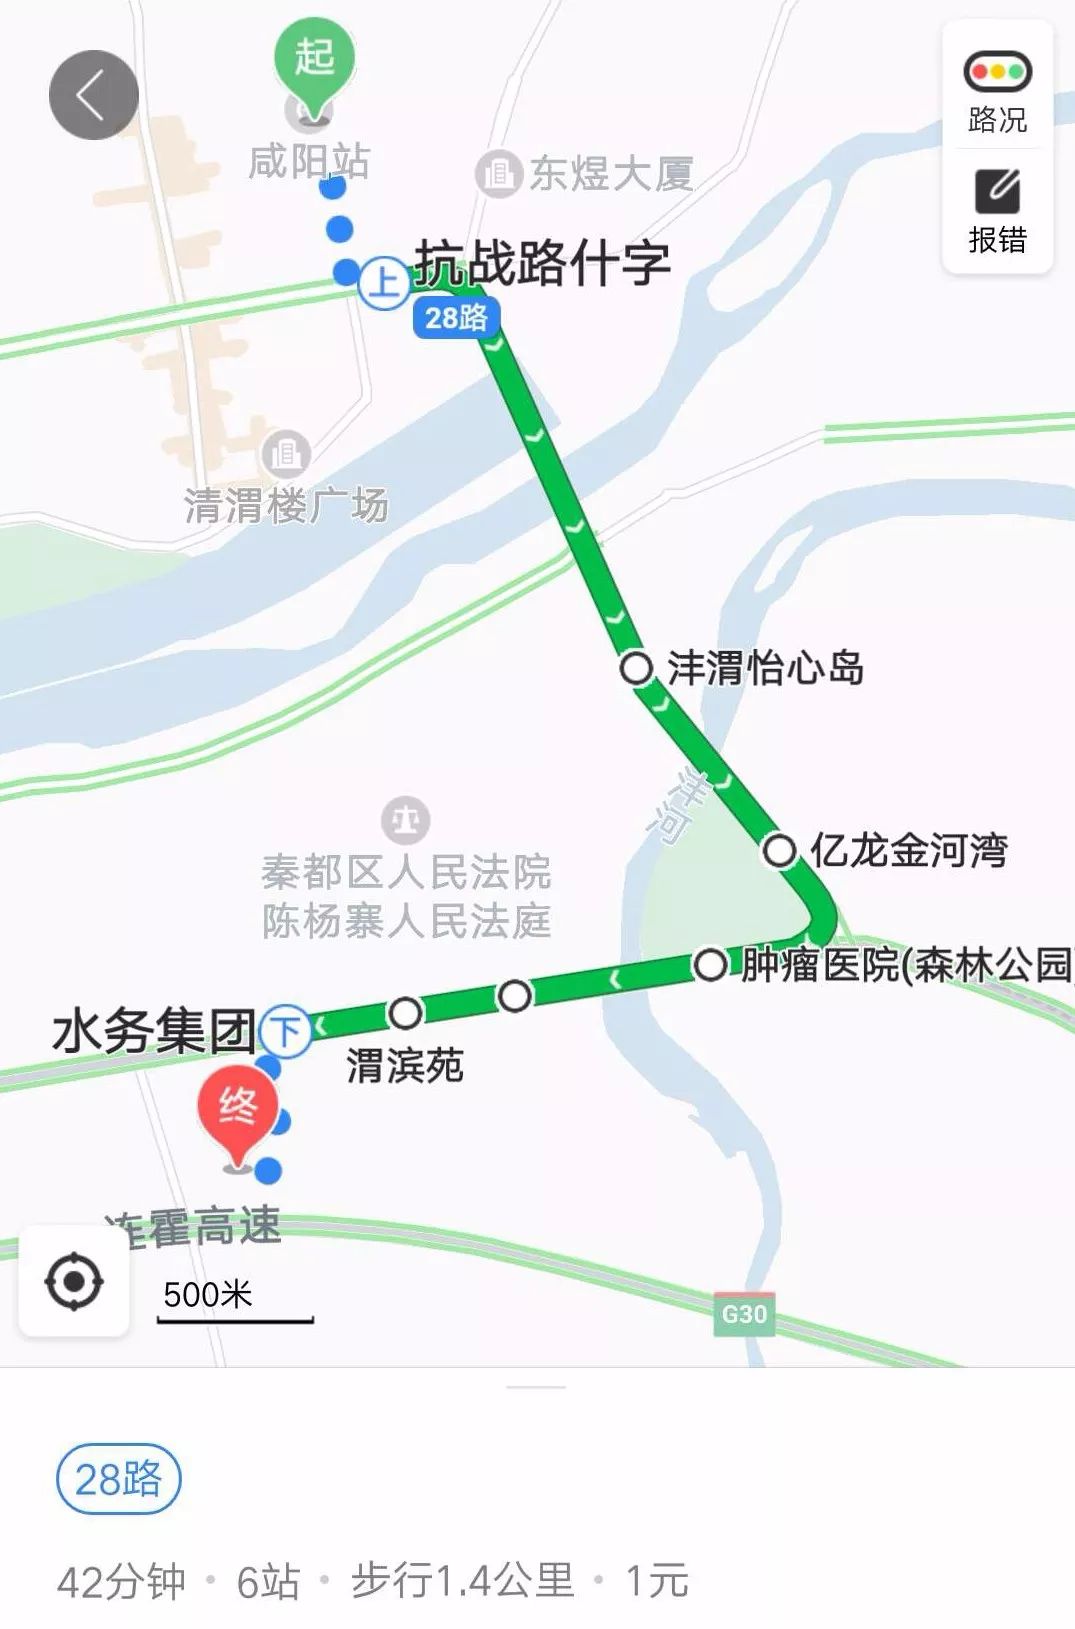 乘坐高铁到咸阳高铁秦都站后,坐21路公交车,于水务集团下车即到.